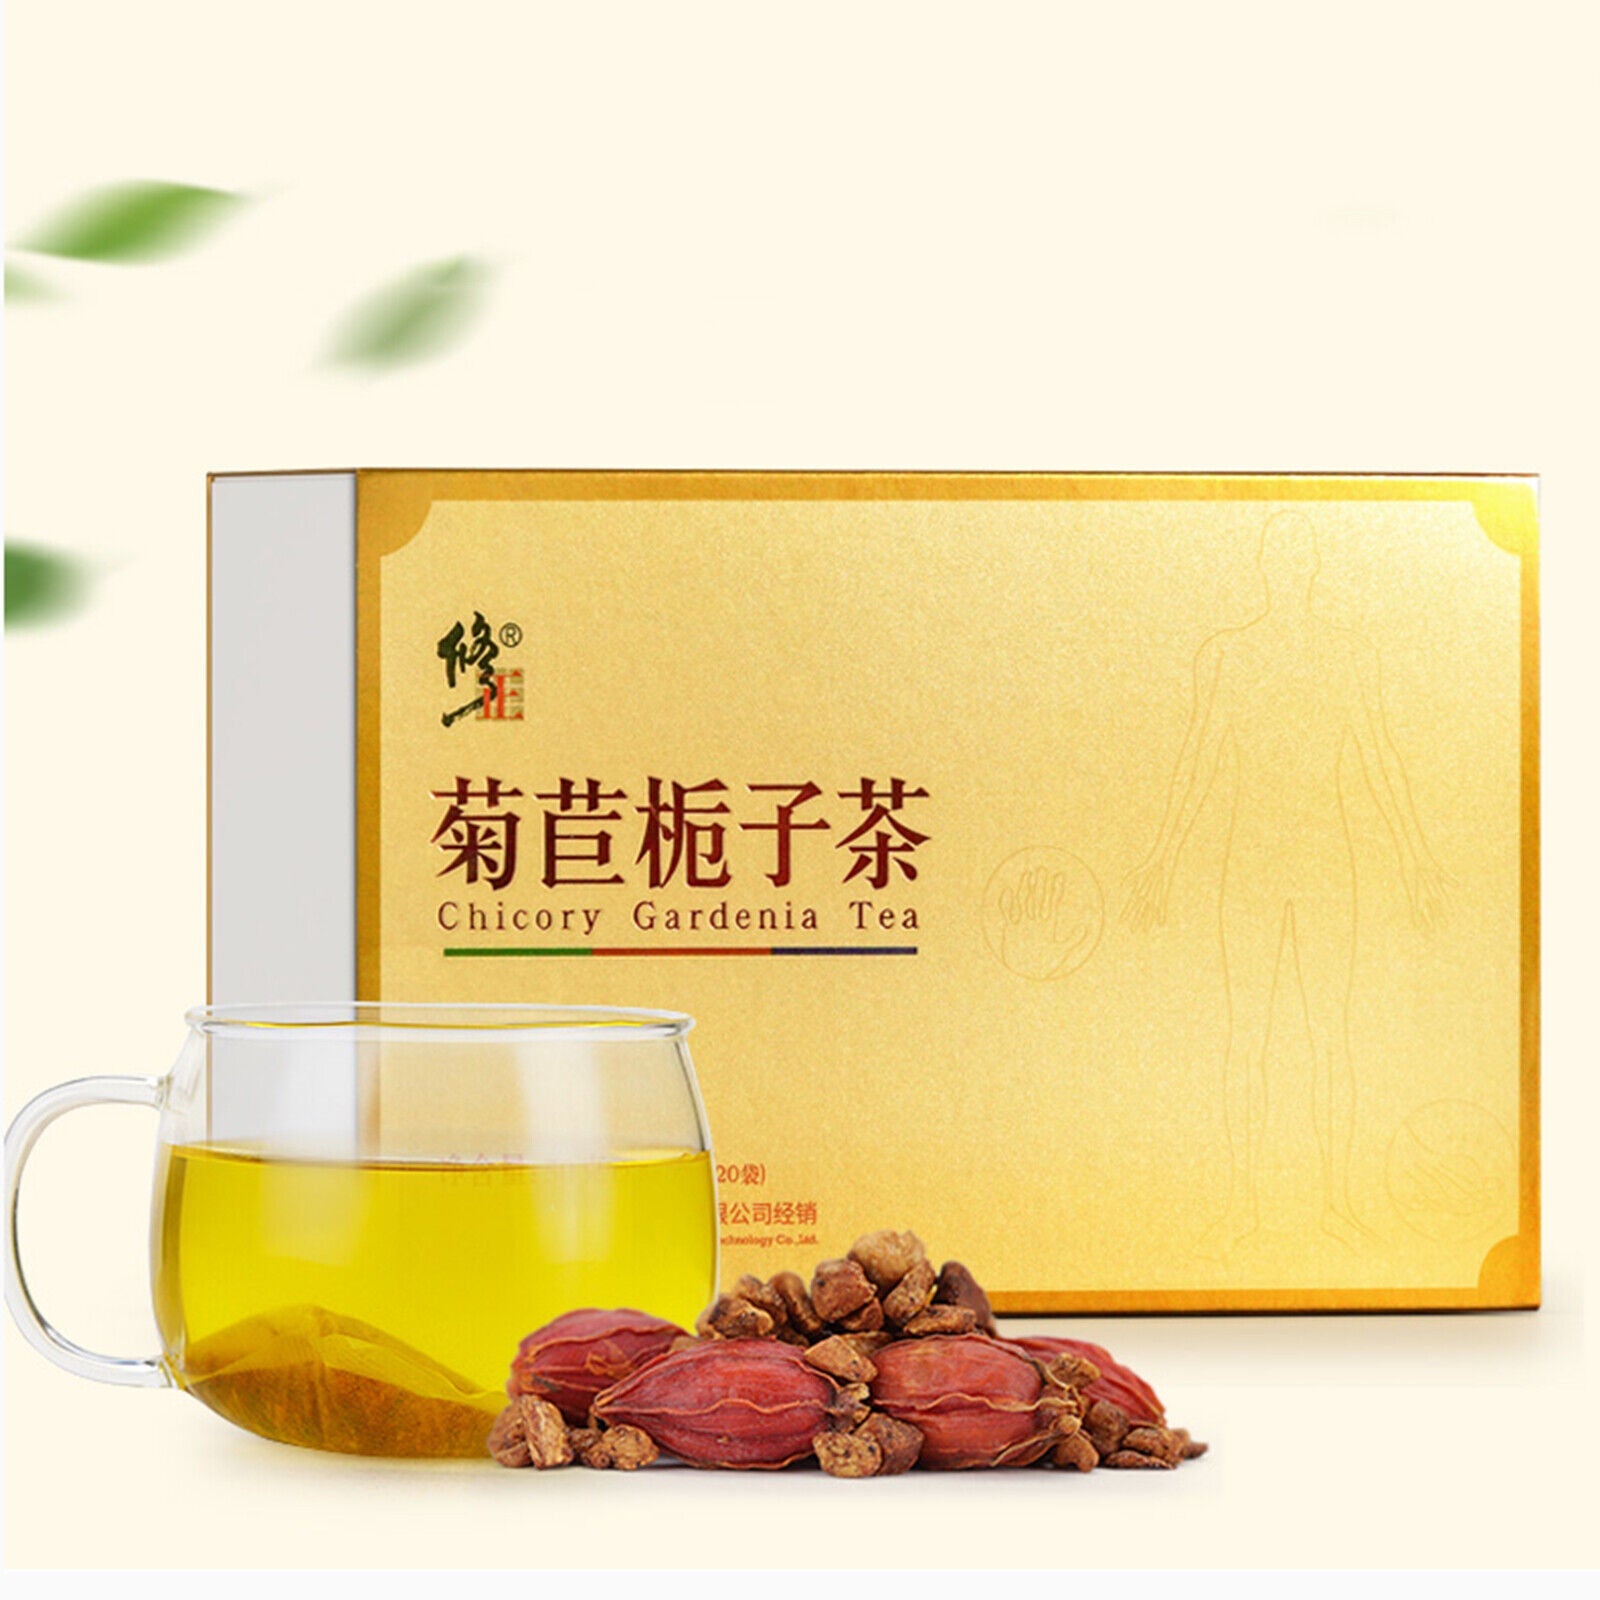 Chicory Gardenia Healthy Herbal Tea Natural Xiuzheng Juju Zhizi Tea 2.5g*20 Bags